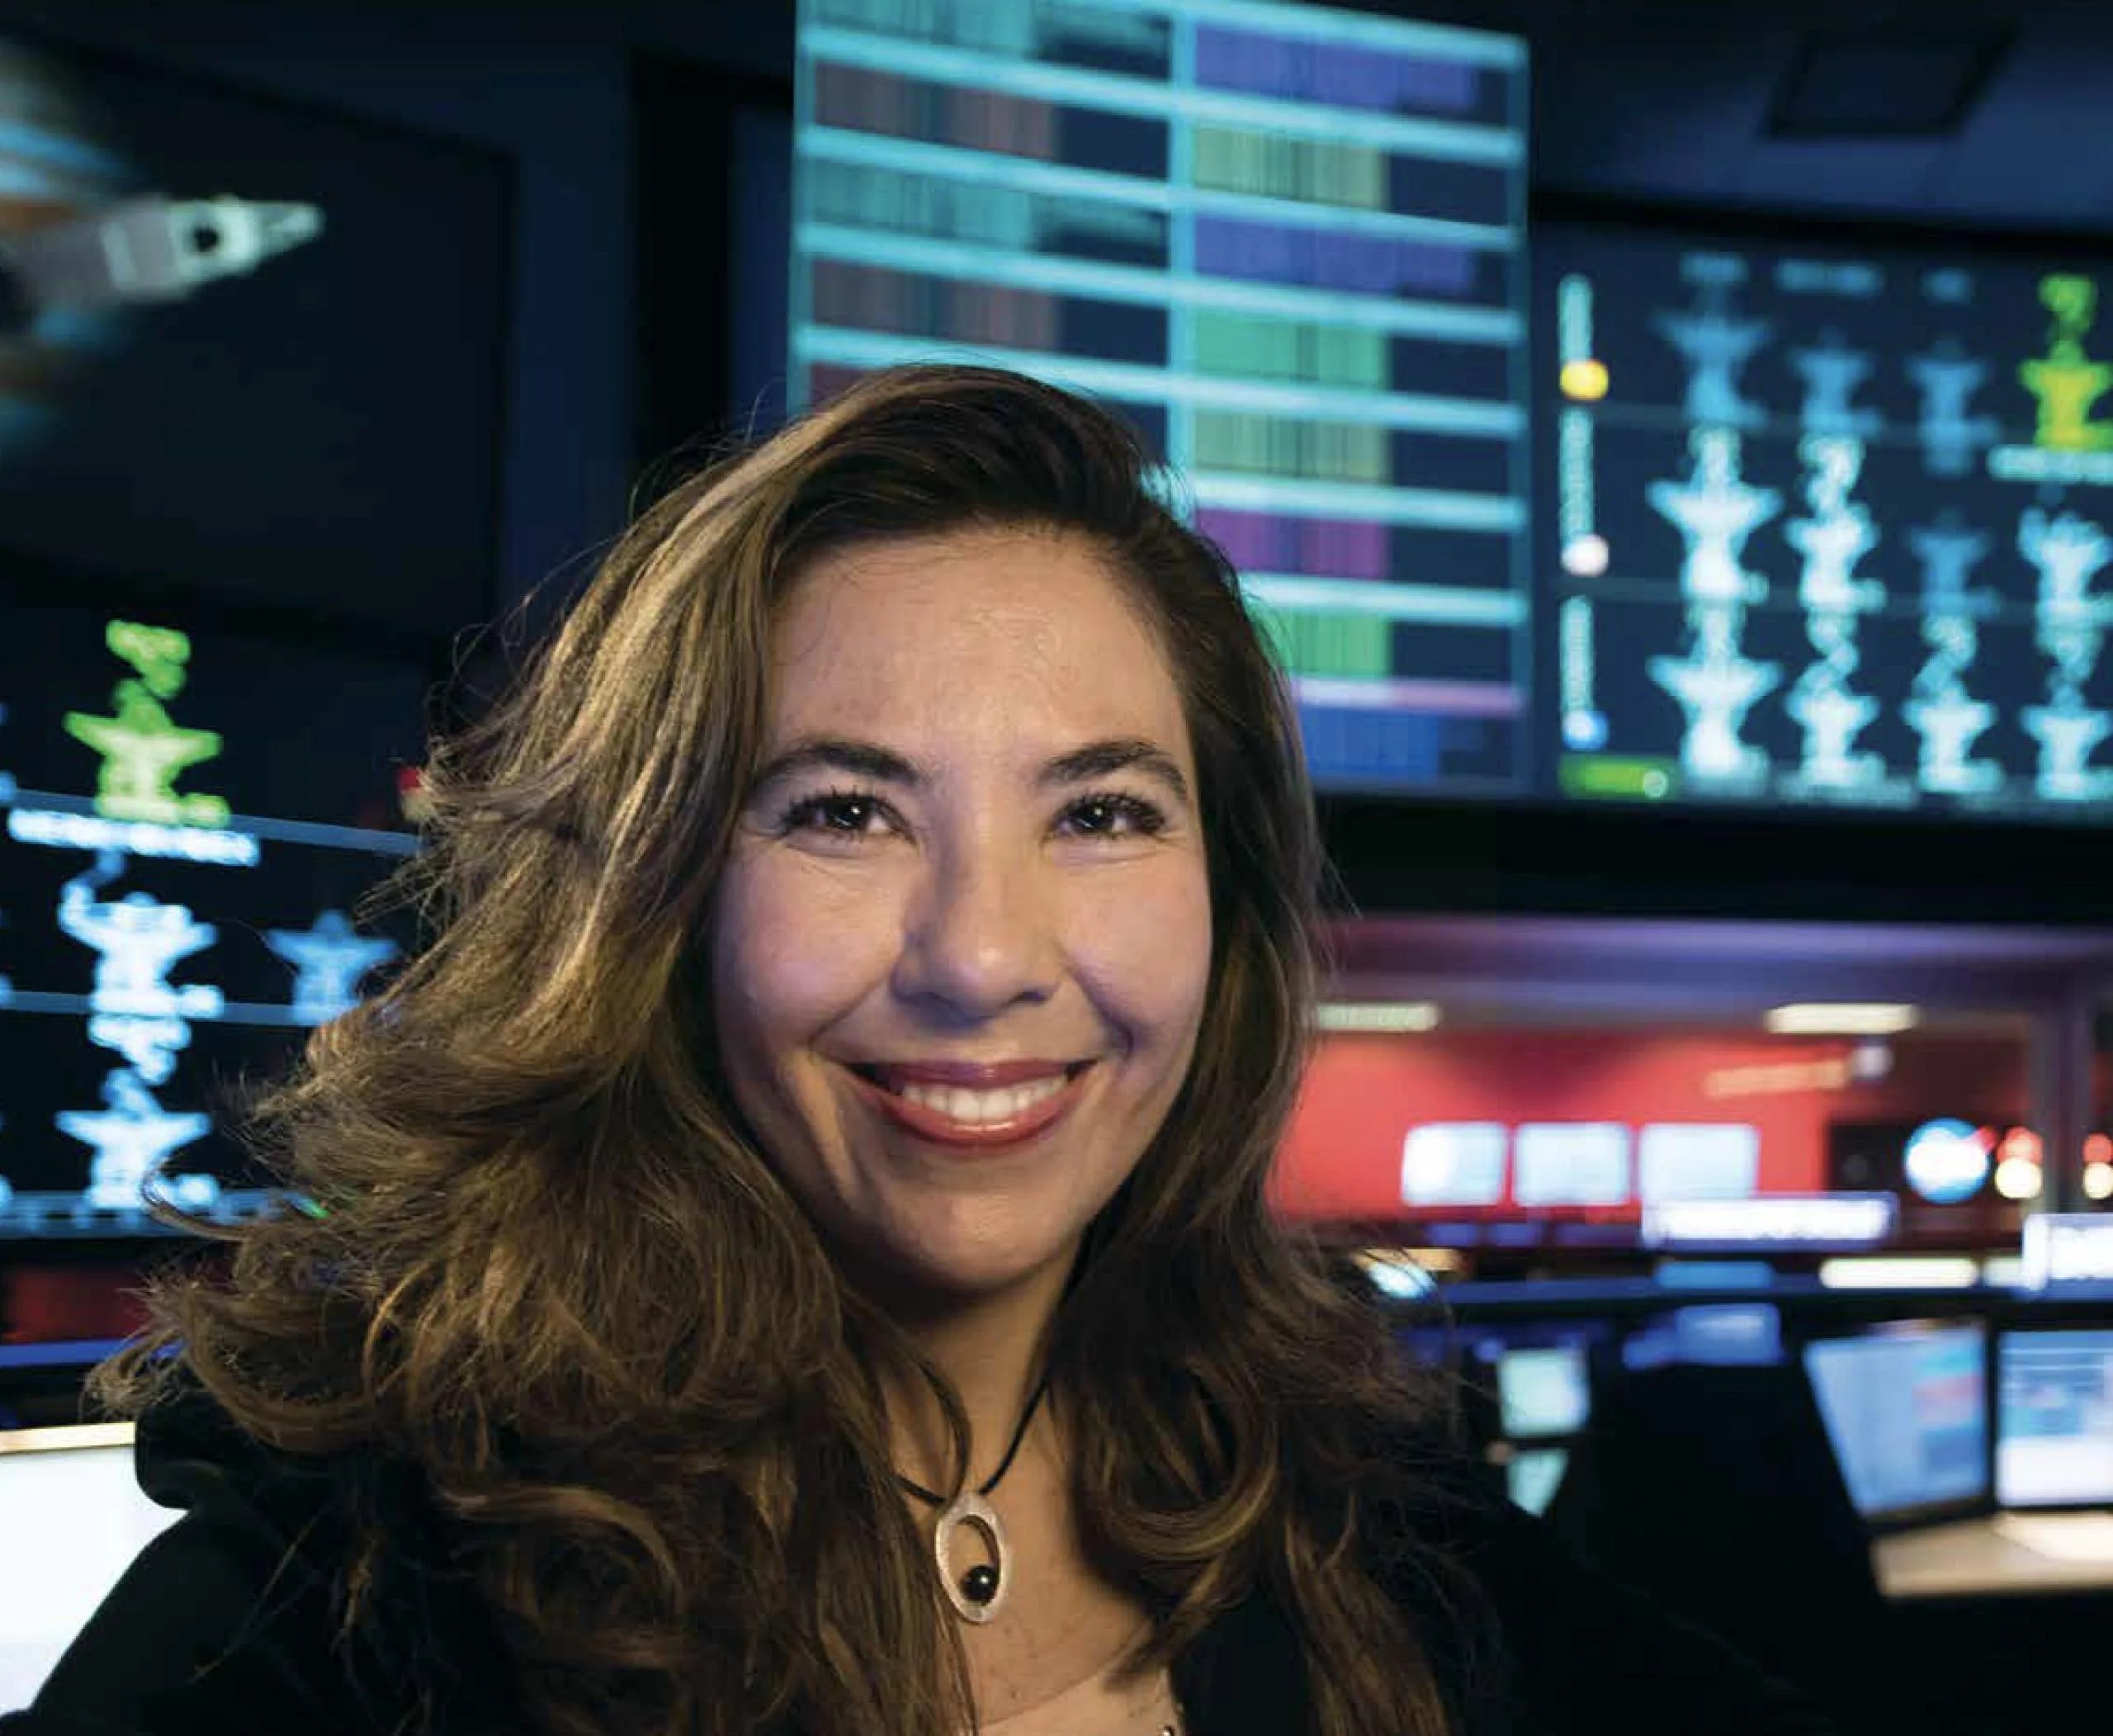 La Dra. Michela Muñoz Fernández, una mujer de pelo castaño claro y largo, sonríe a la cámara en primer plano. En el fondo se ven computadoras encendidas. Crédito de la imagen: NASA